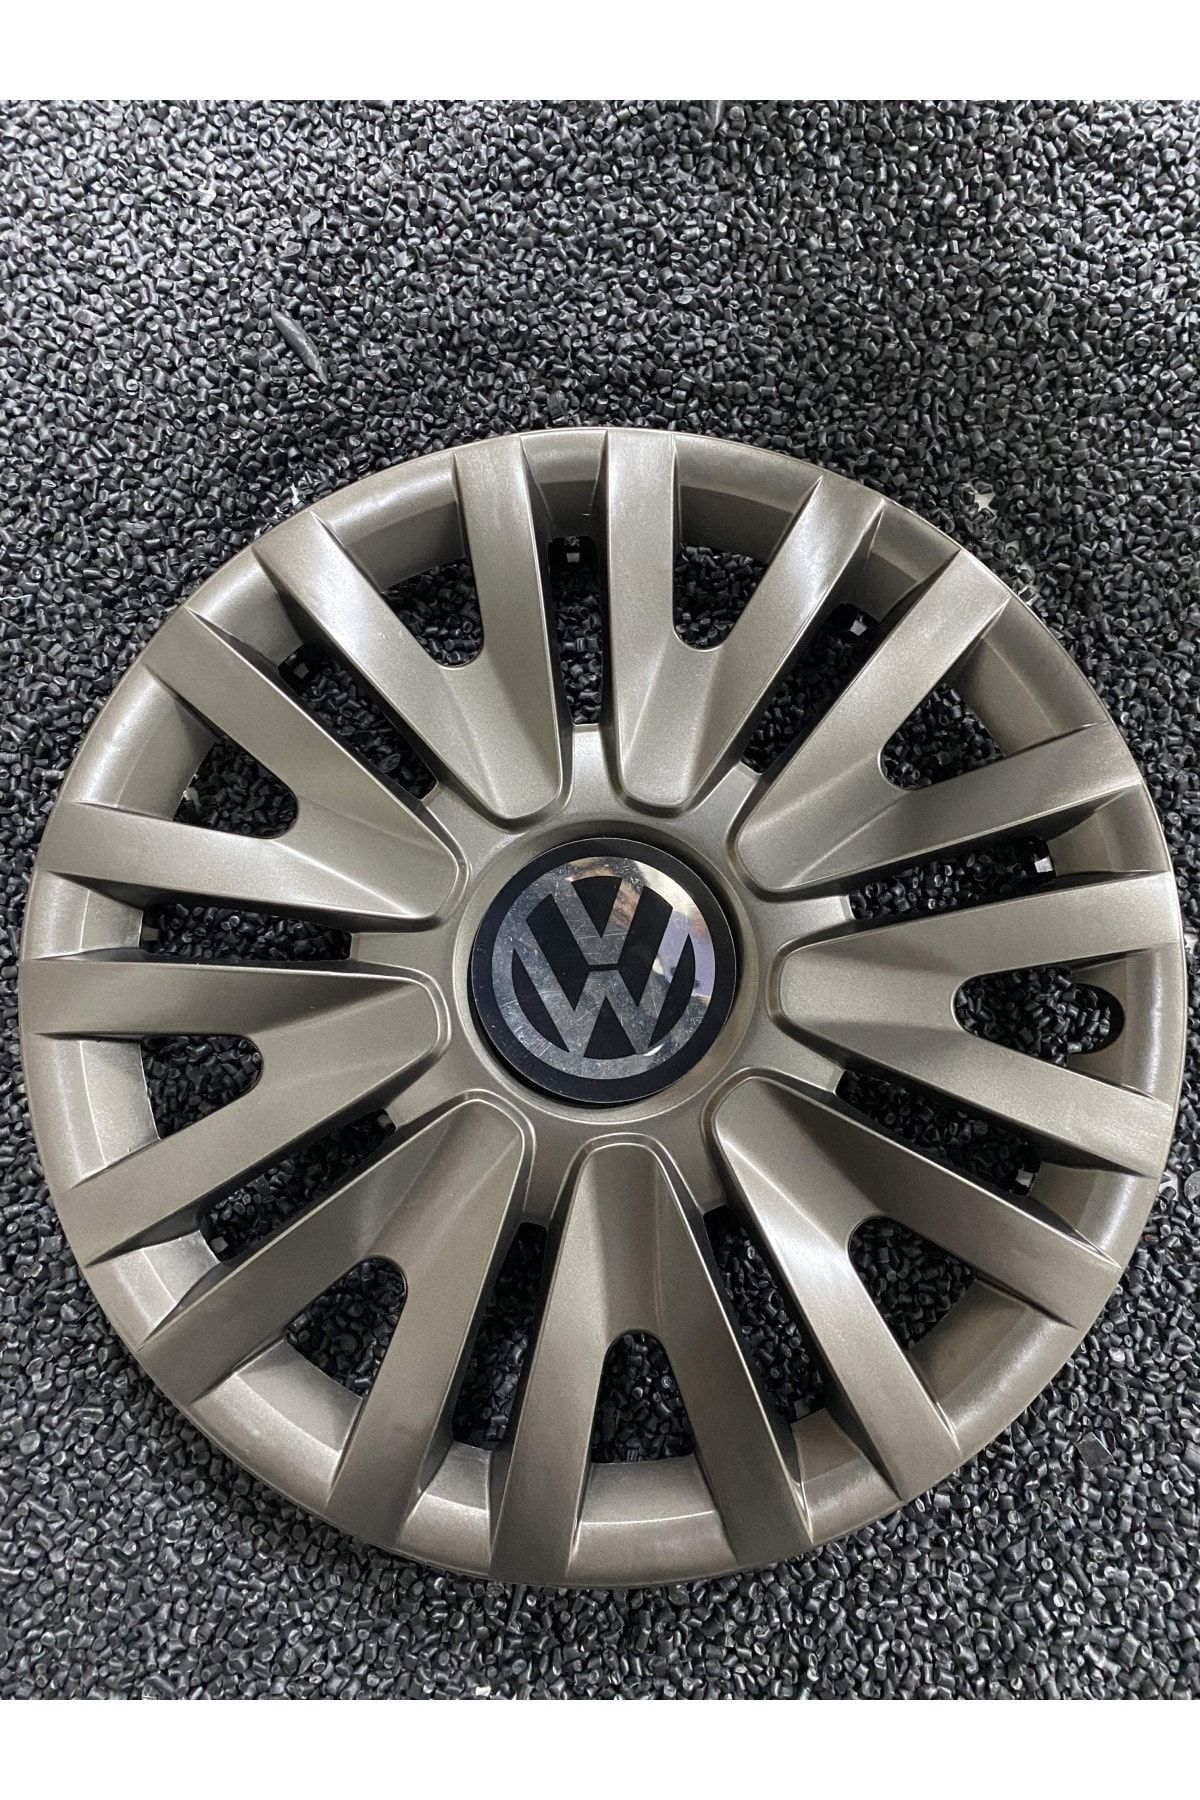 YILAPJANT Volkswagen Polo 15" Inç Kırılmaz Jant Kapağı Füme 4 Adet